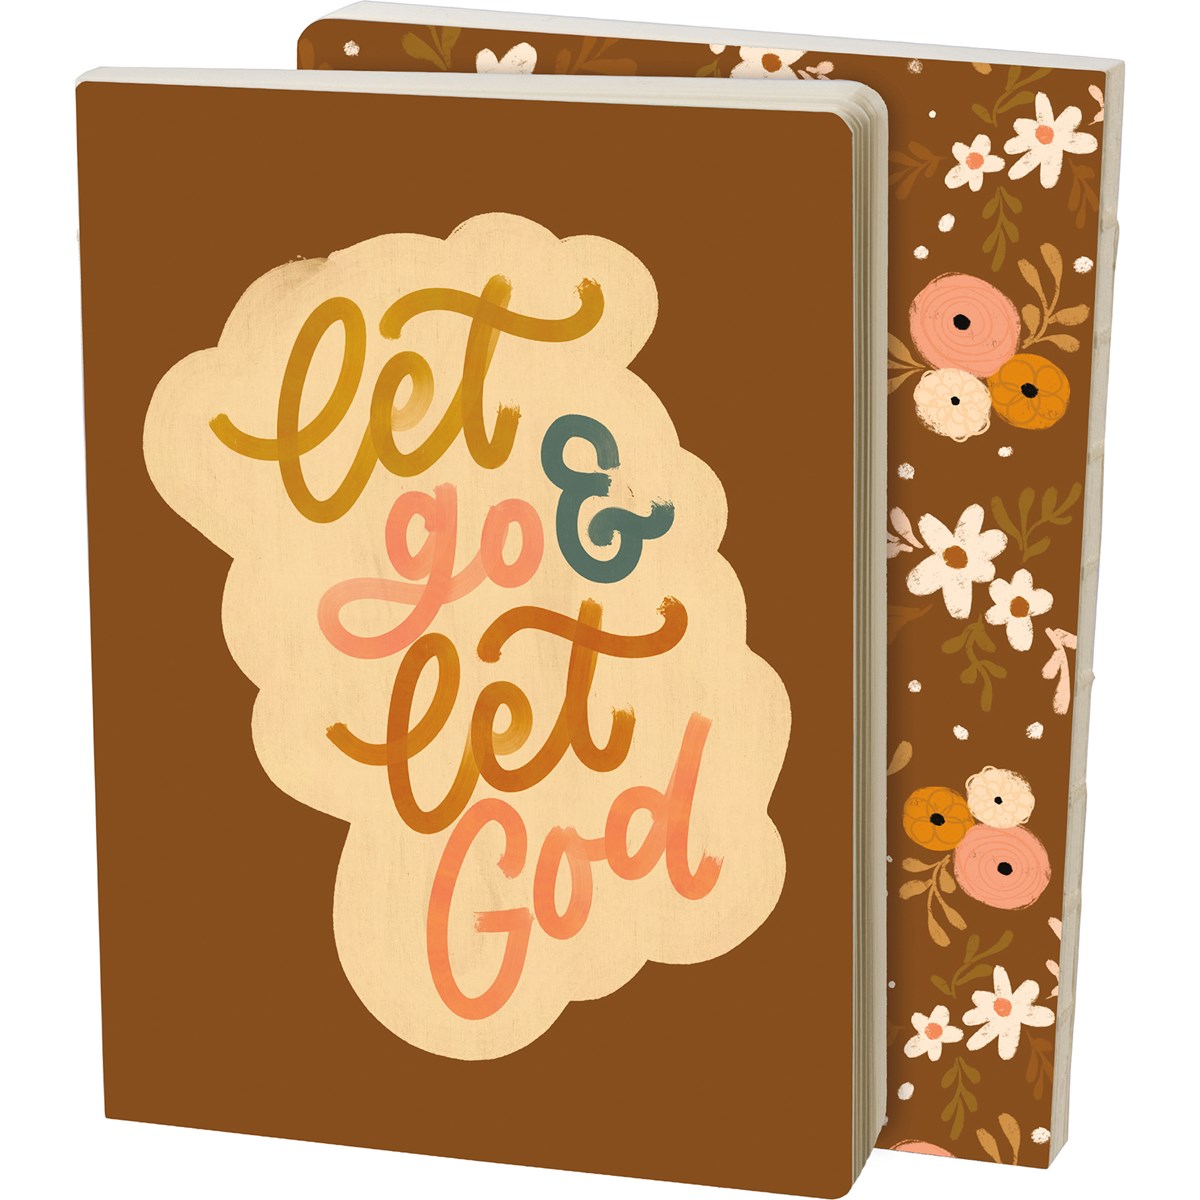 Journal - Let Go and Let God